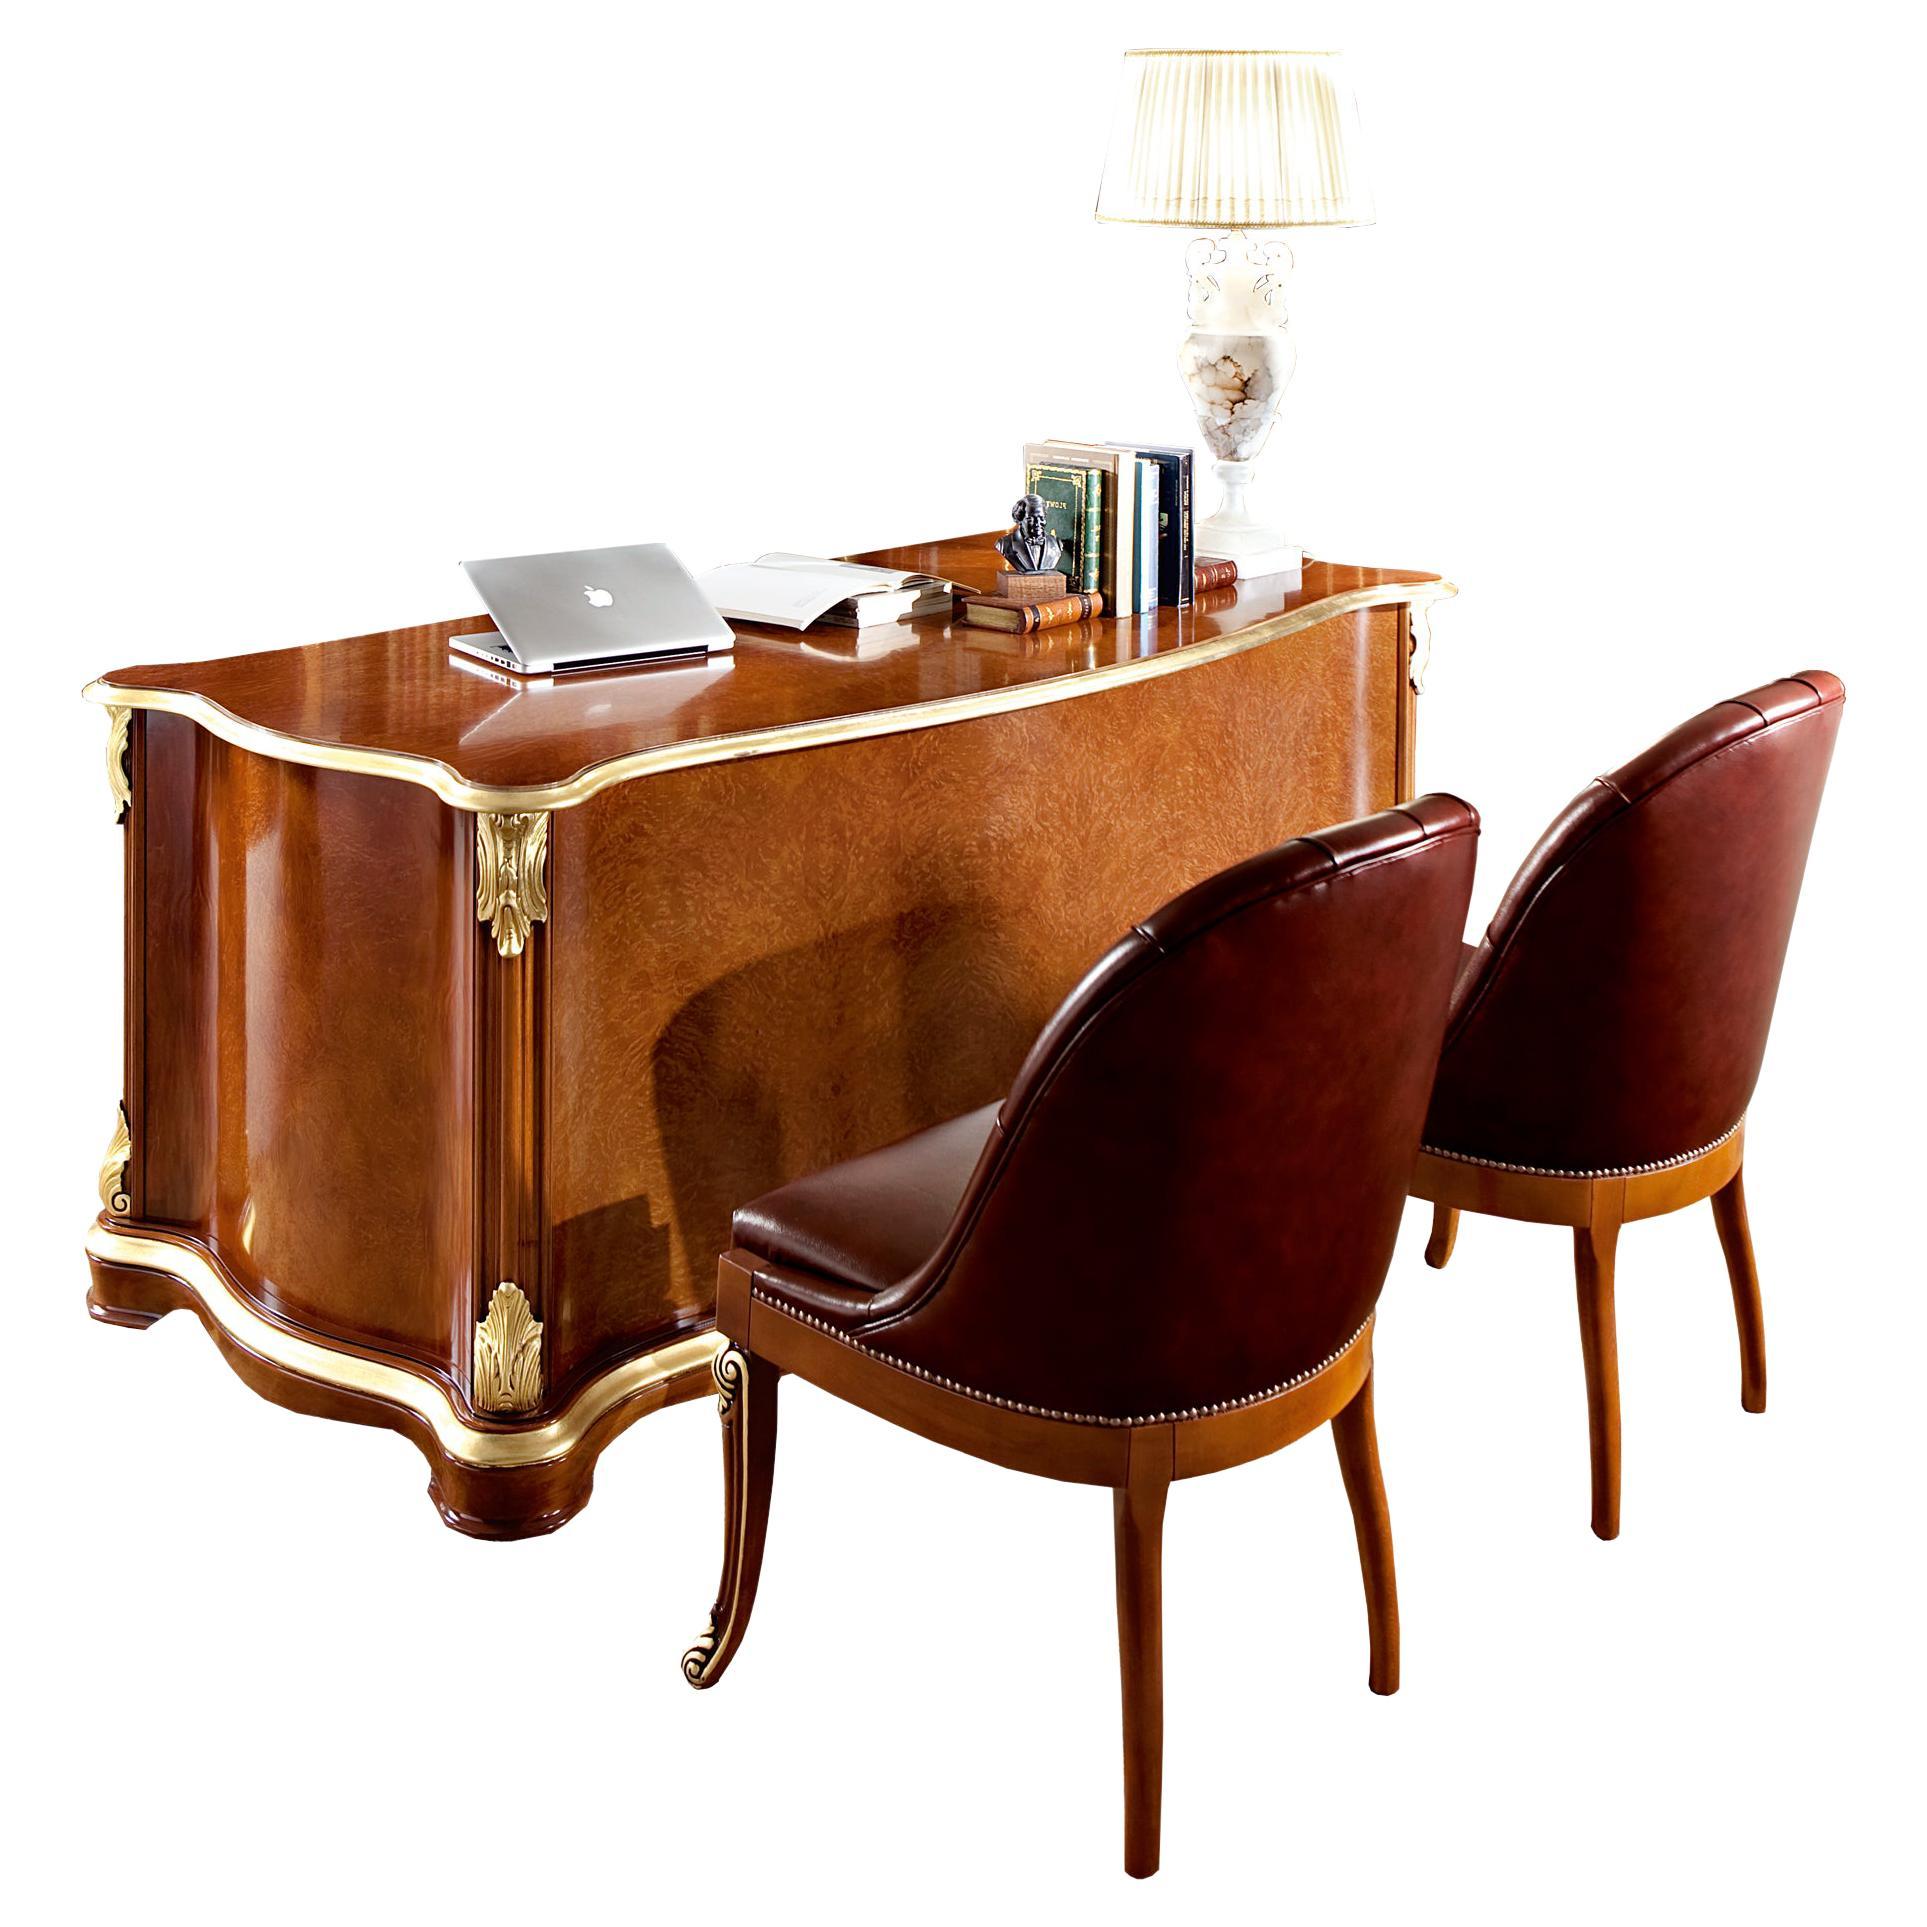 Barocker Figuerd-Büro-Schreibtisch aus dem Barock mit Blattgolddetails und Furnier von Modenese Luxury